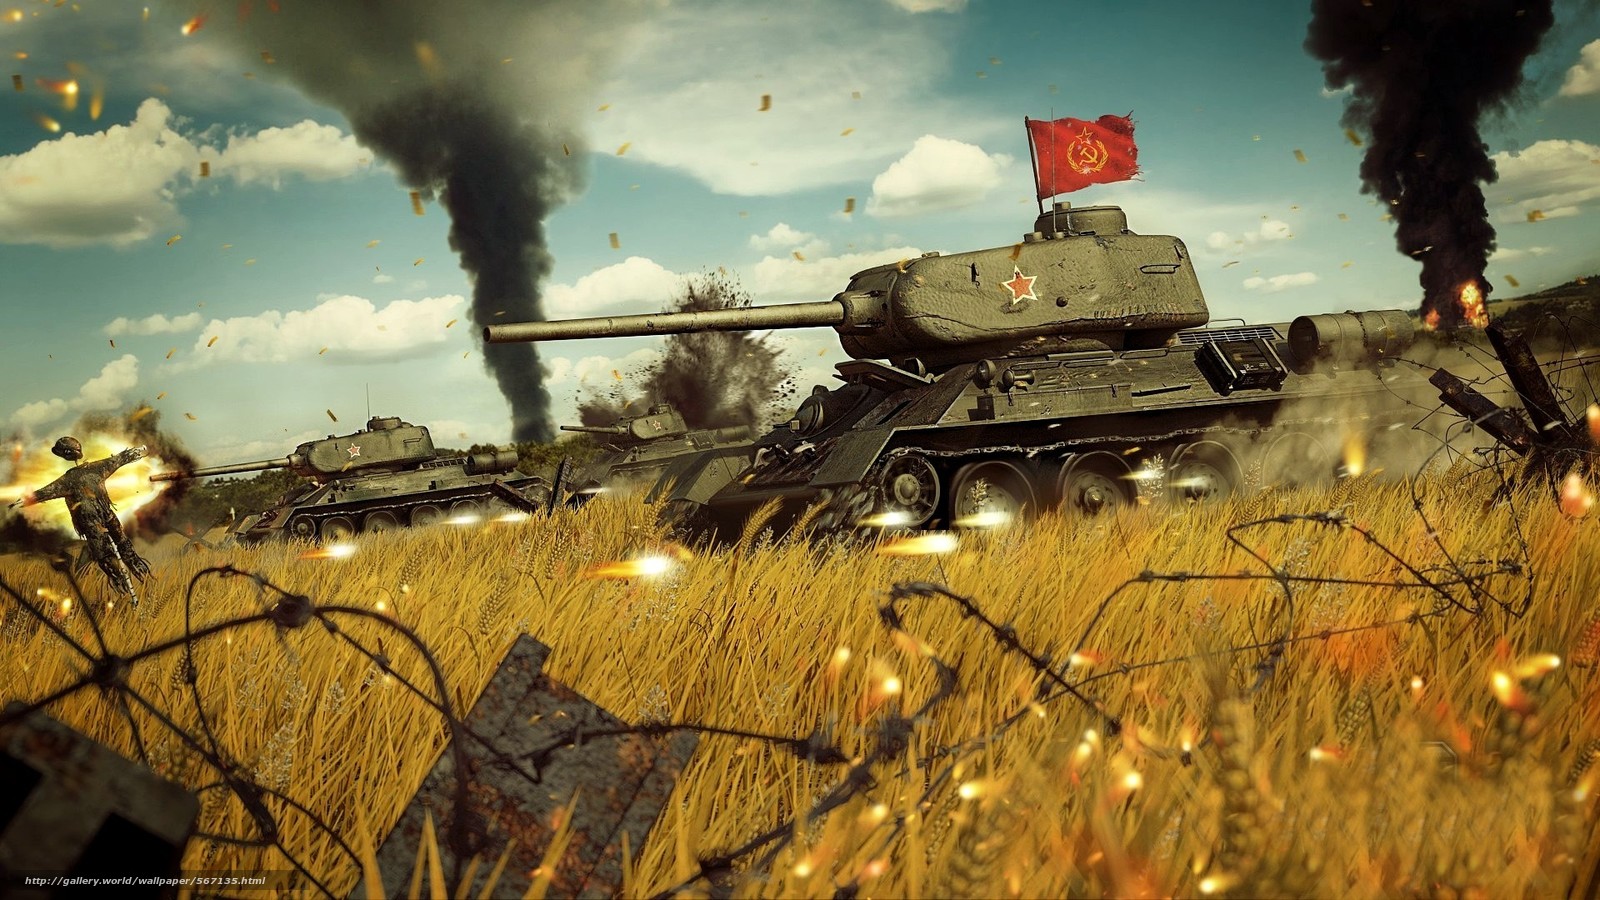 Wallpaper Red Army Soviet Medium Tank During